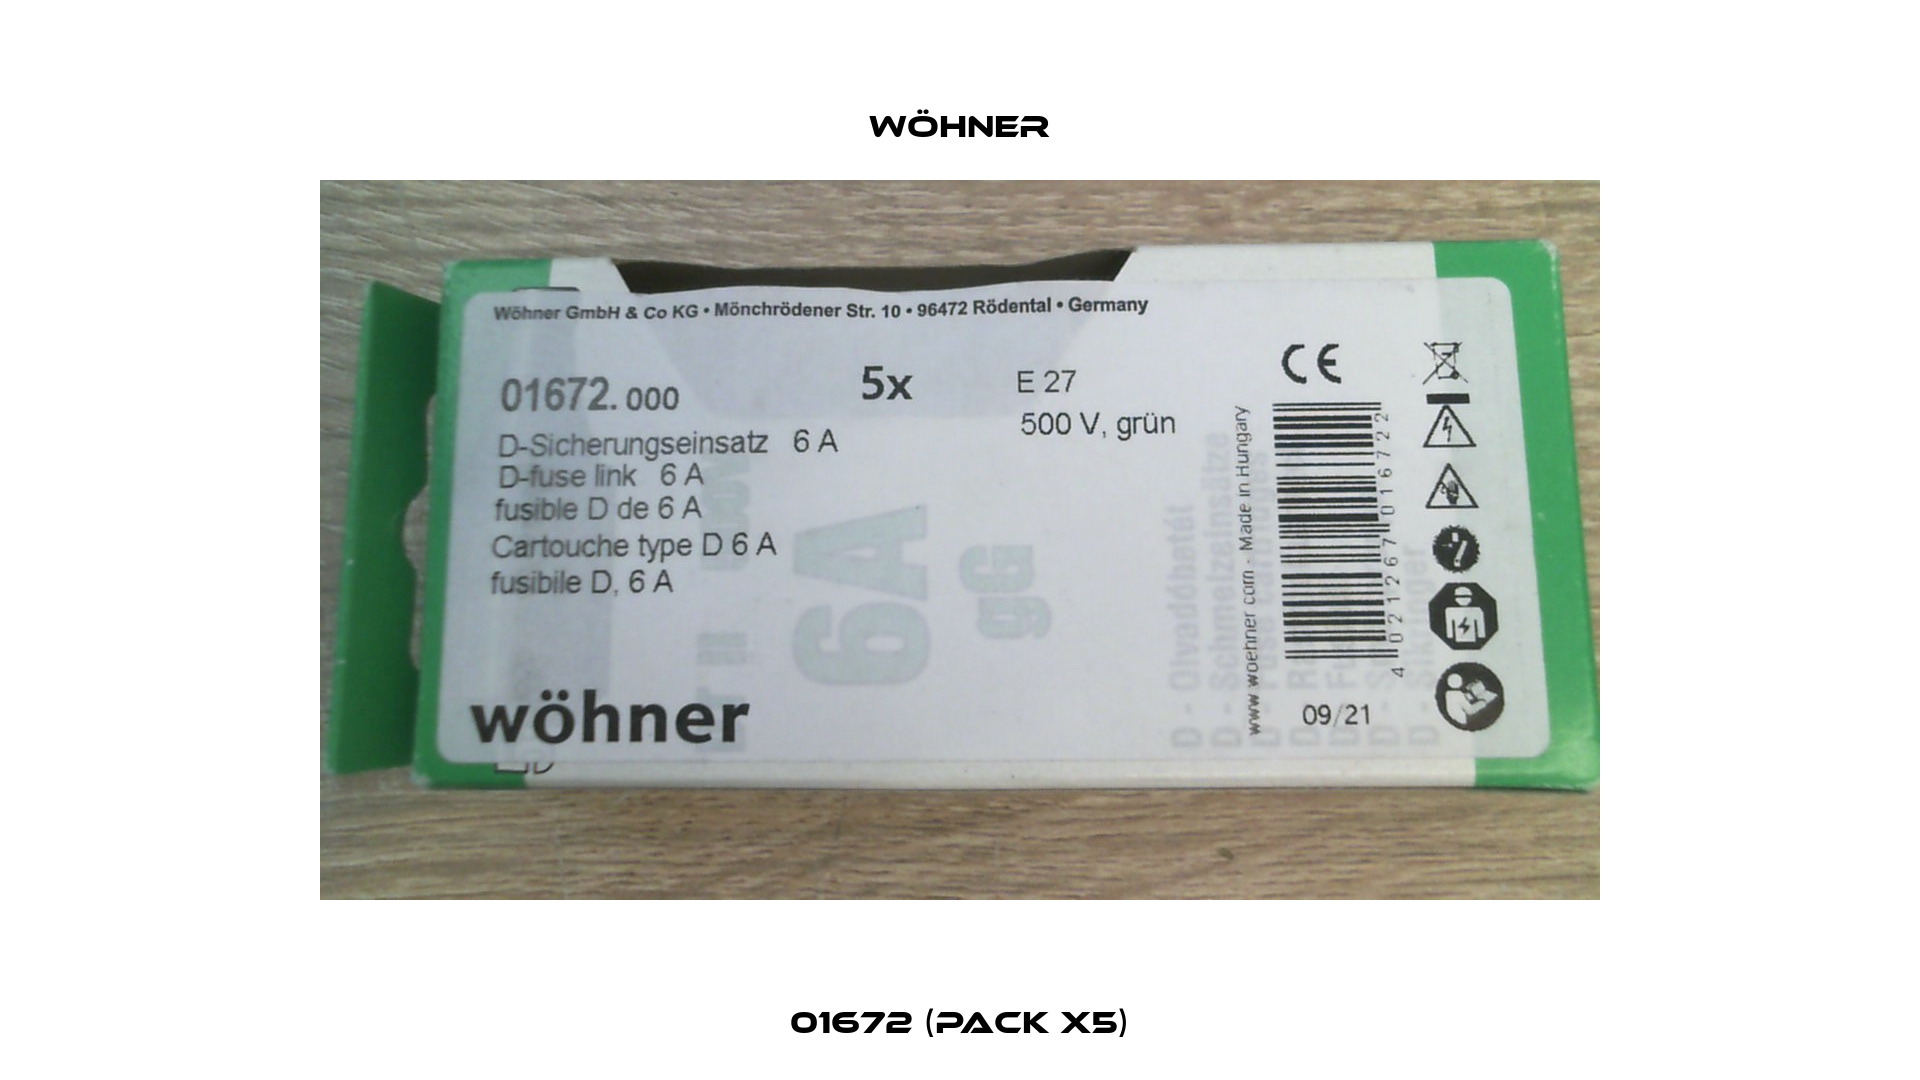 01672 (pack x5) Wöhner